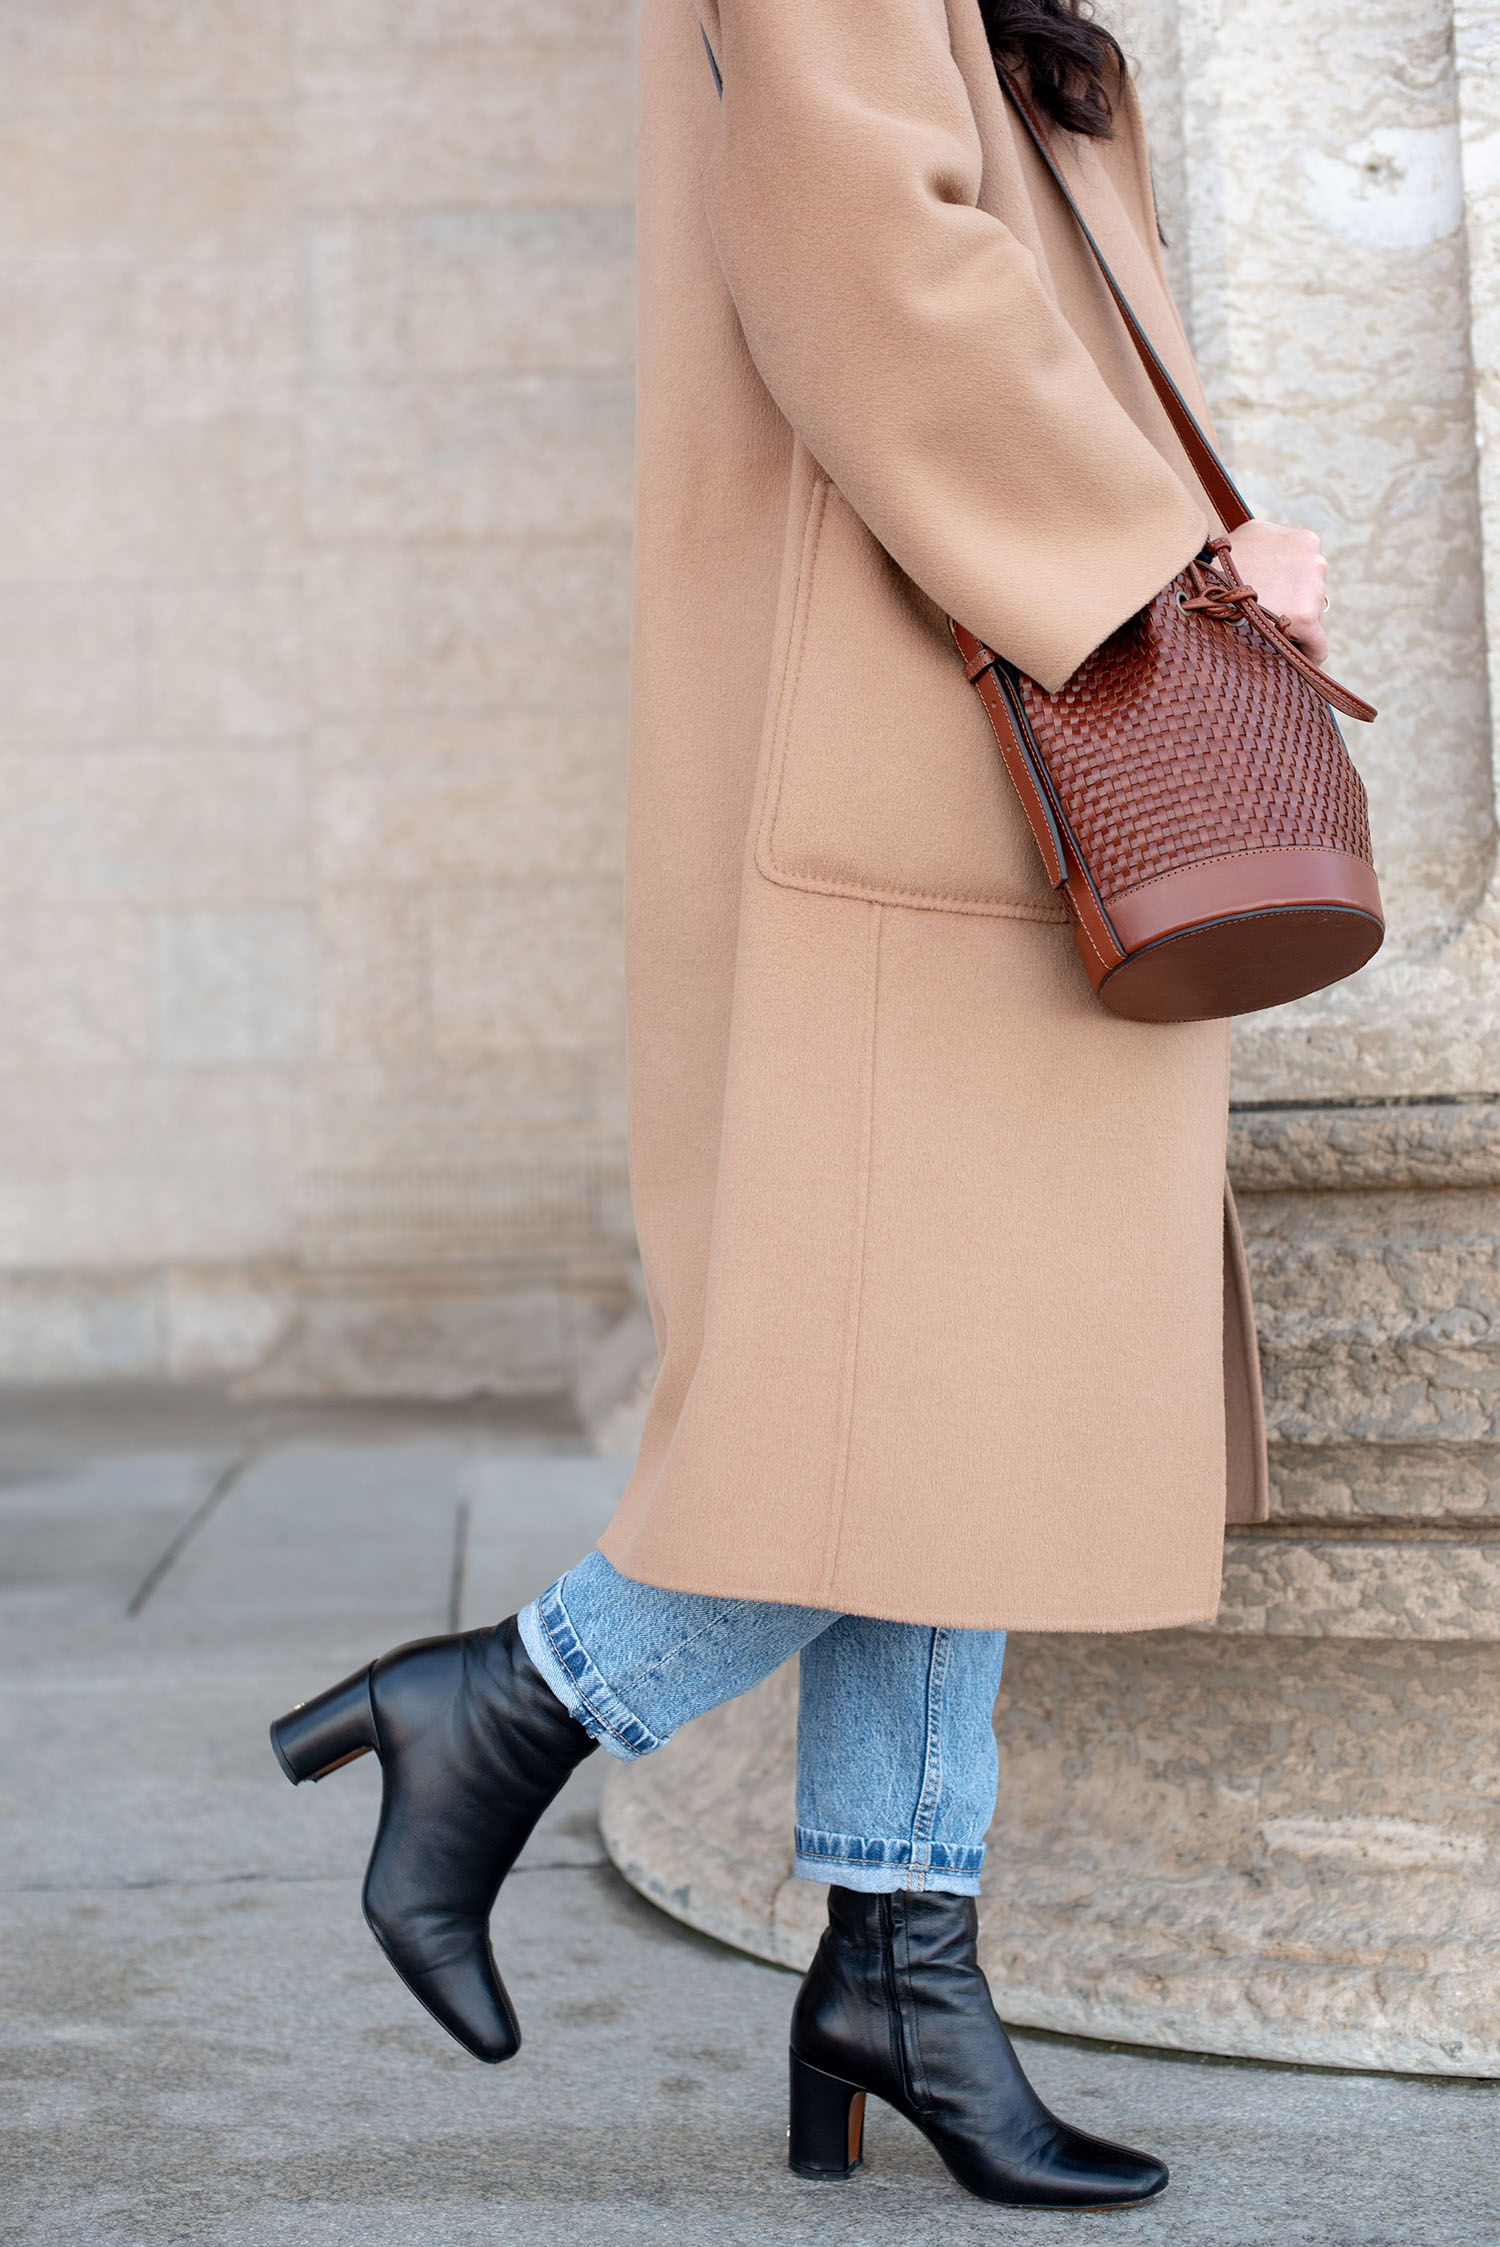 Coco & Vera - Sezane mini Farrow bag, Rouje boots, The Curated cashmere coat